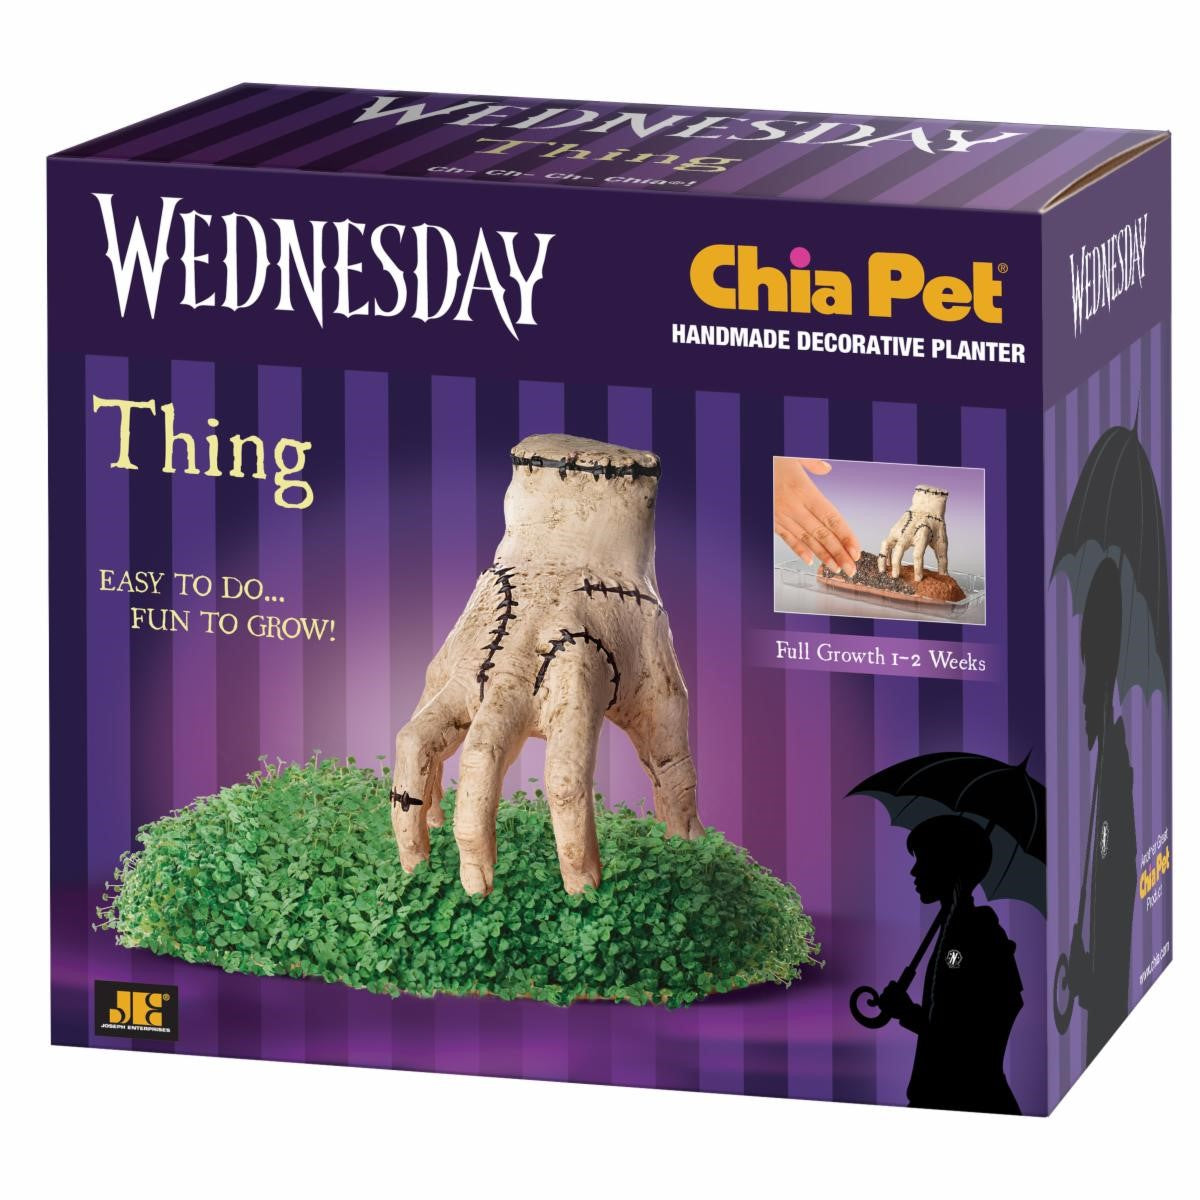 Chia Pet - Thing Hand Wednesday-hotRAGS.com